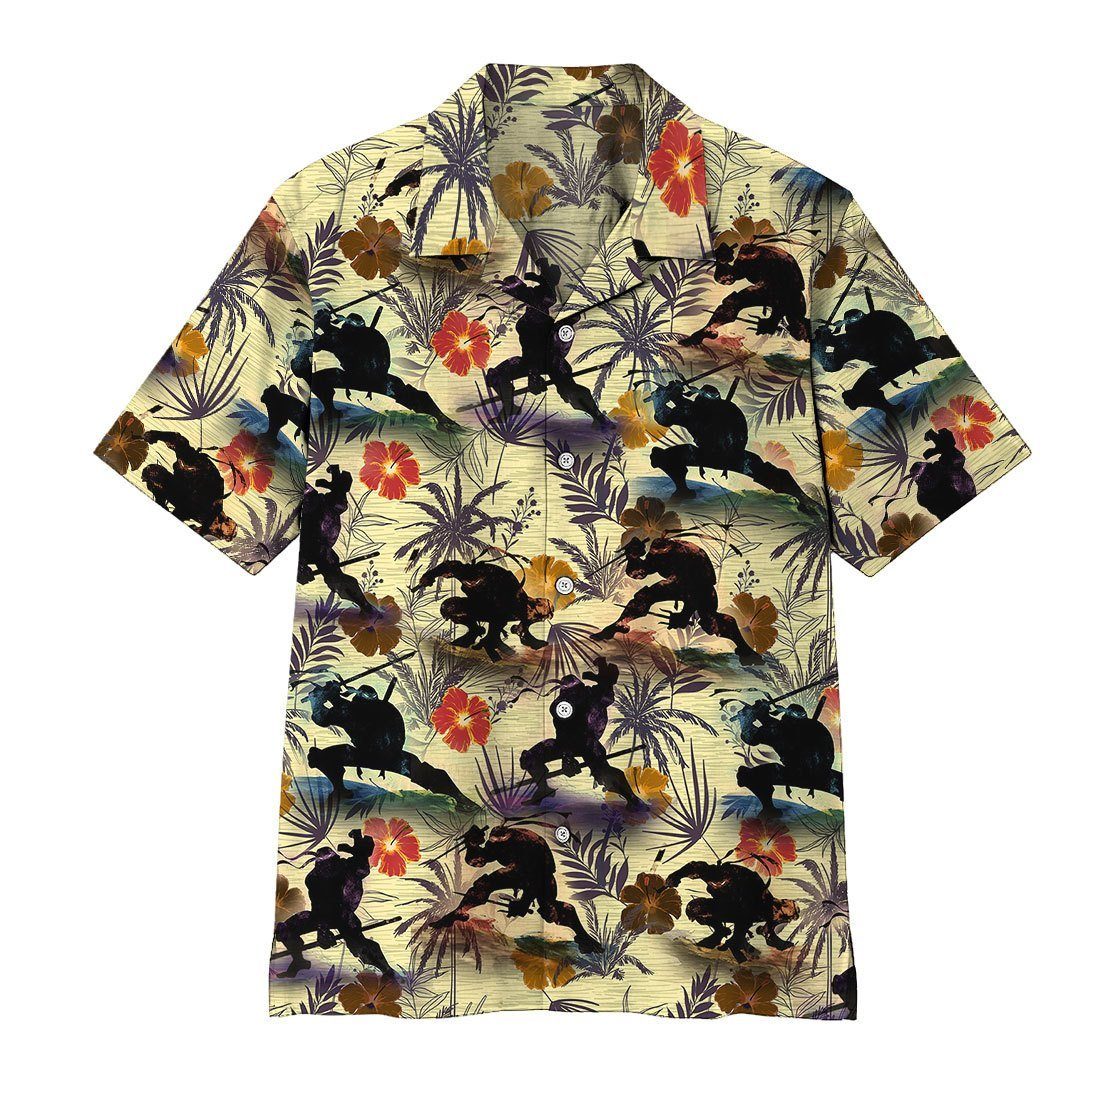 Gearhumans 3D TMNT Hawaii Shirt ZZ06042 Hawai Shirt Short Sleeve Shirt S 